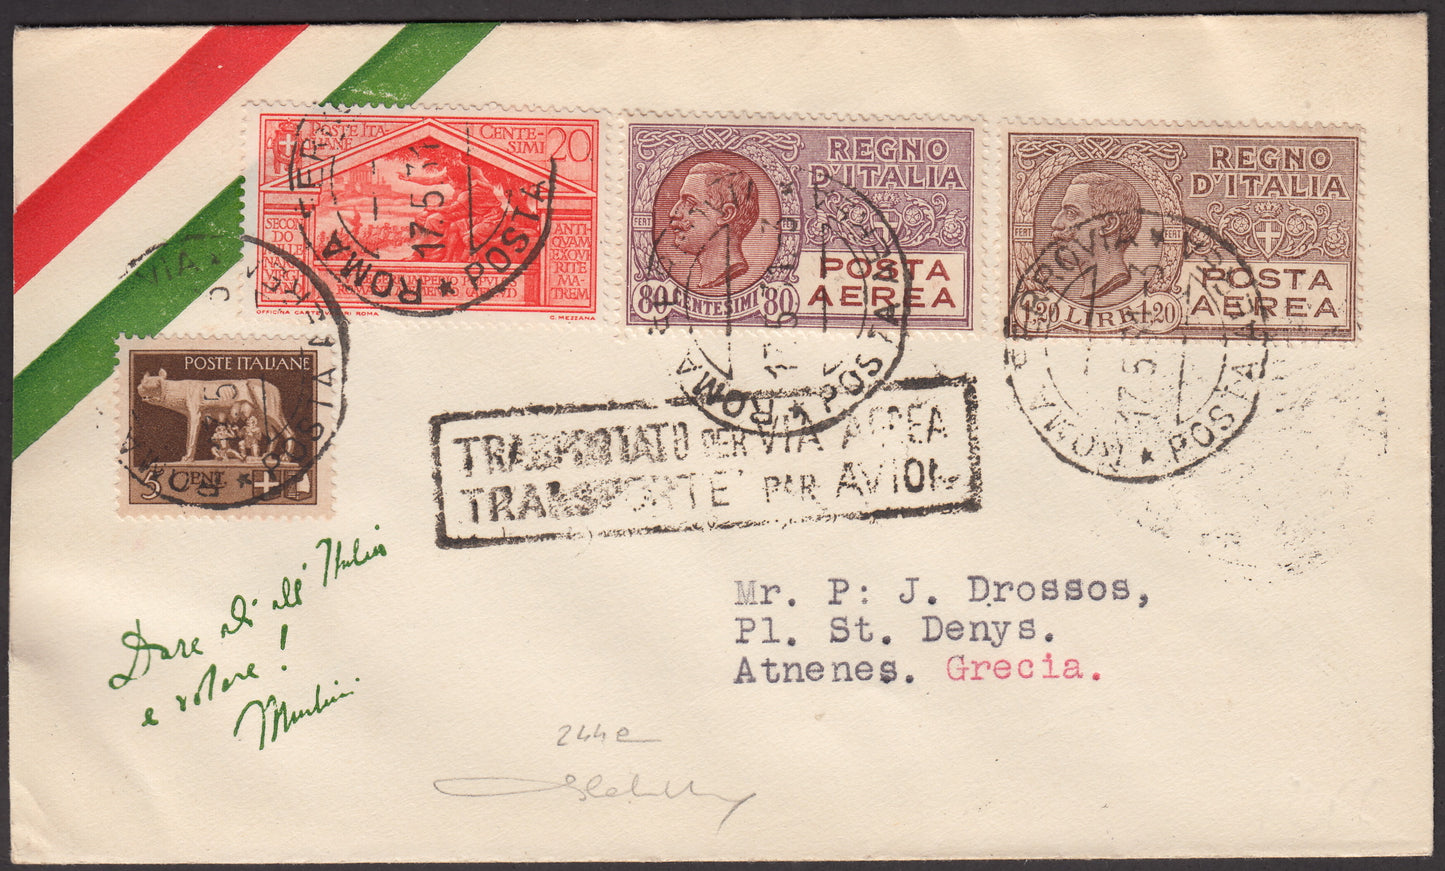 PA28 - 1931 - Primo volo Napoli - Atene 17/5/31 affrancata con Imperiale c. 5 bruno + Virgilio c. 20 arancio + P.A. c. 80 lilla e bruno rosso + L. 1,20 bruno (243 + 283 + PA 3A + 5)